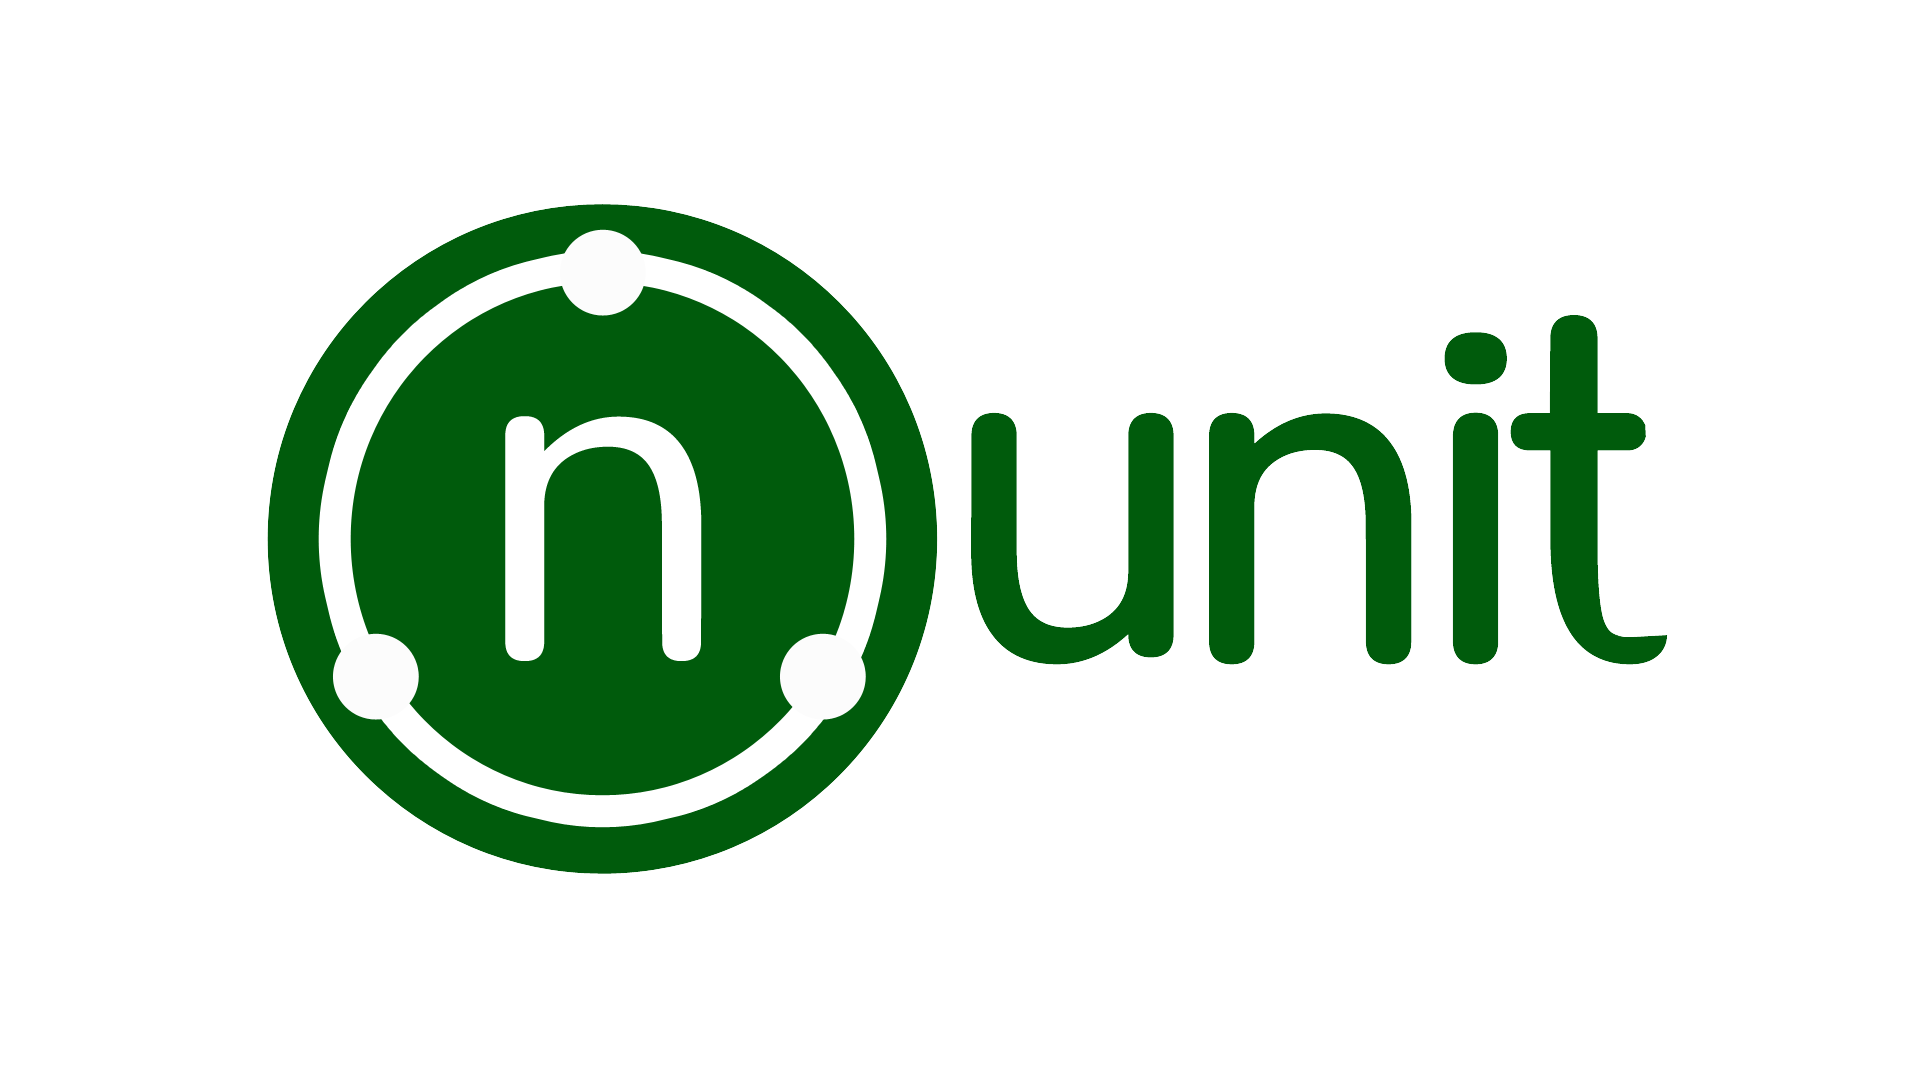  Prueba unitaria de C # con NUnit y .NET Core